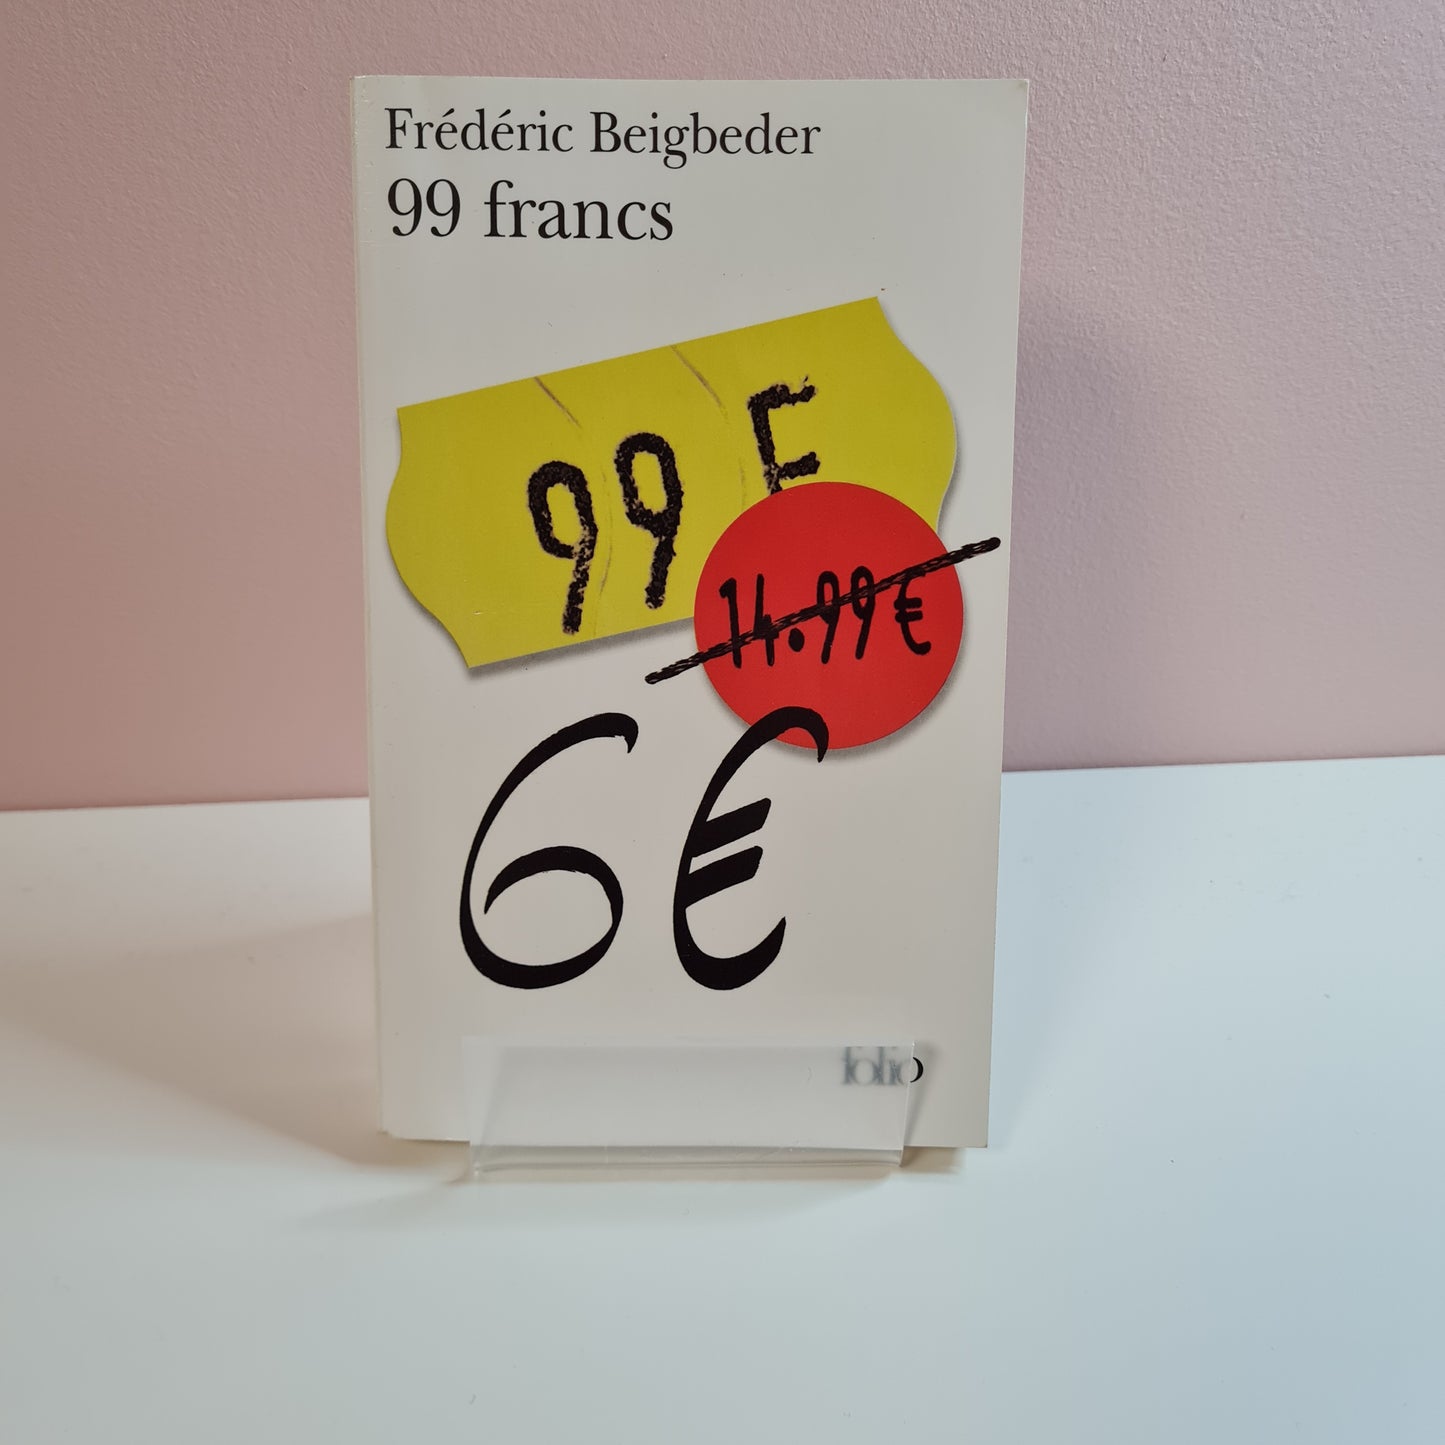 6€